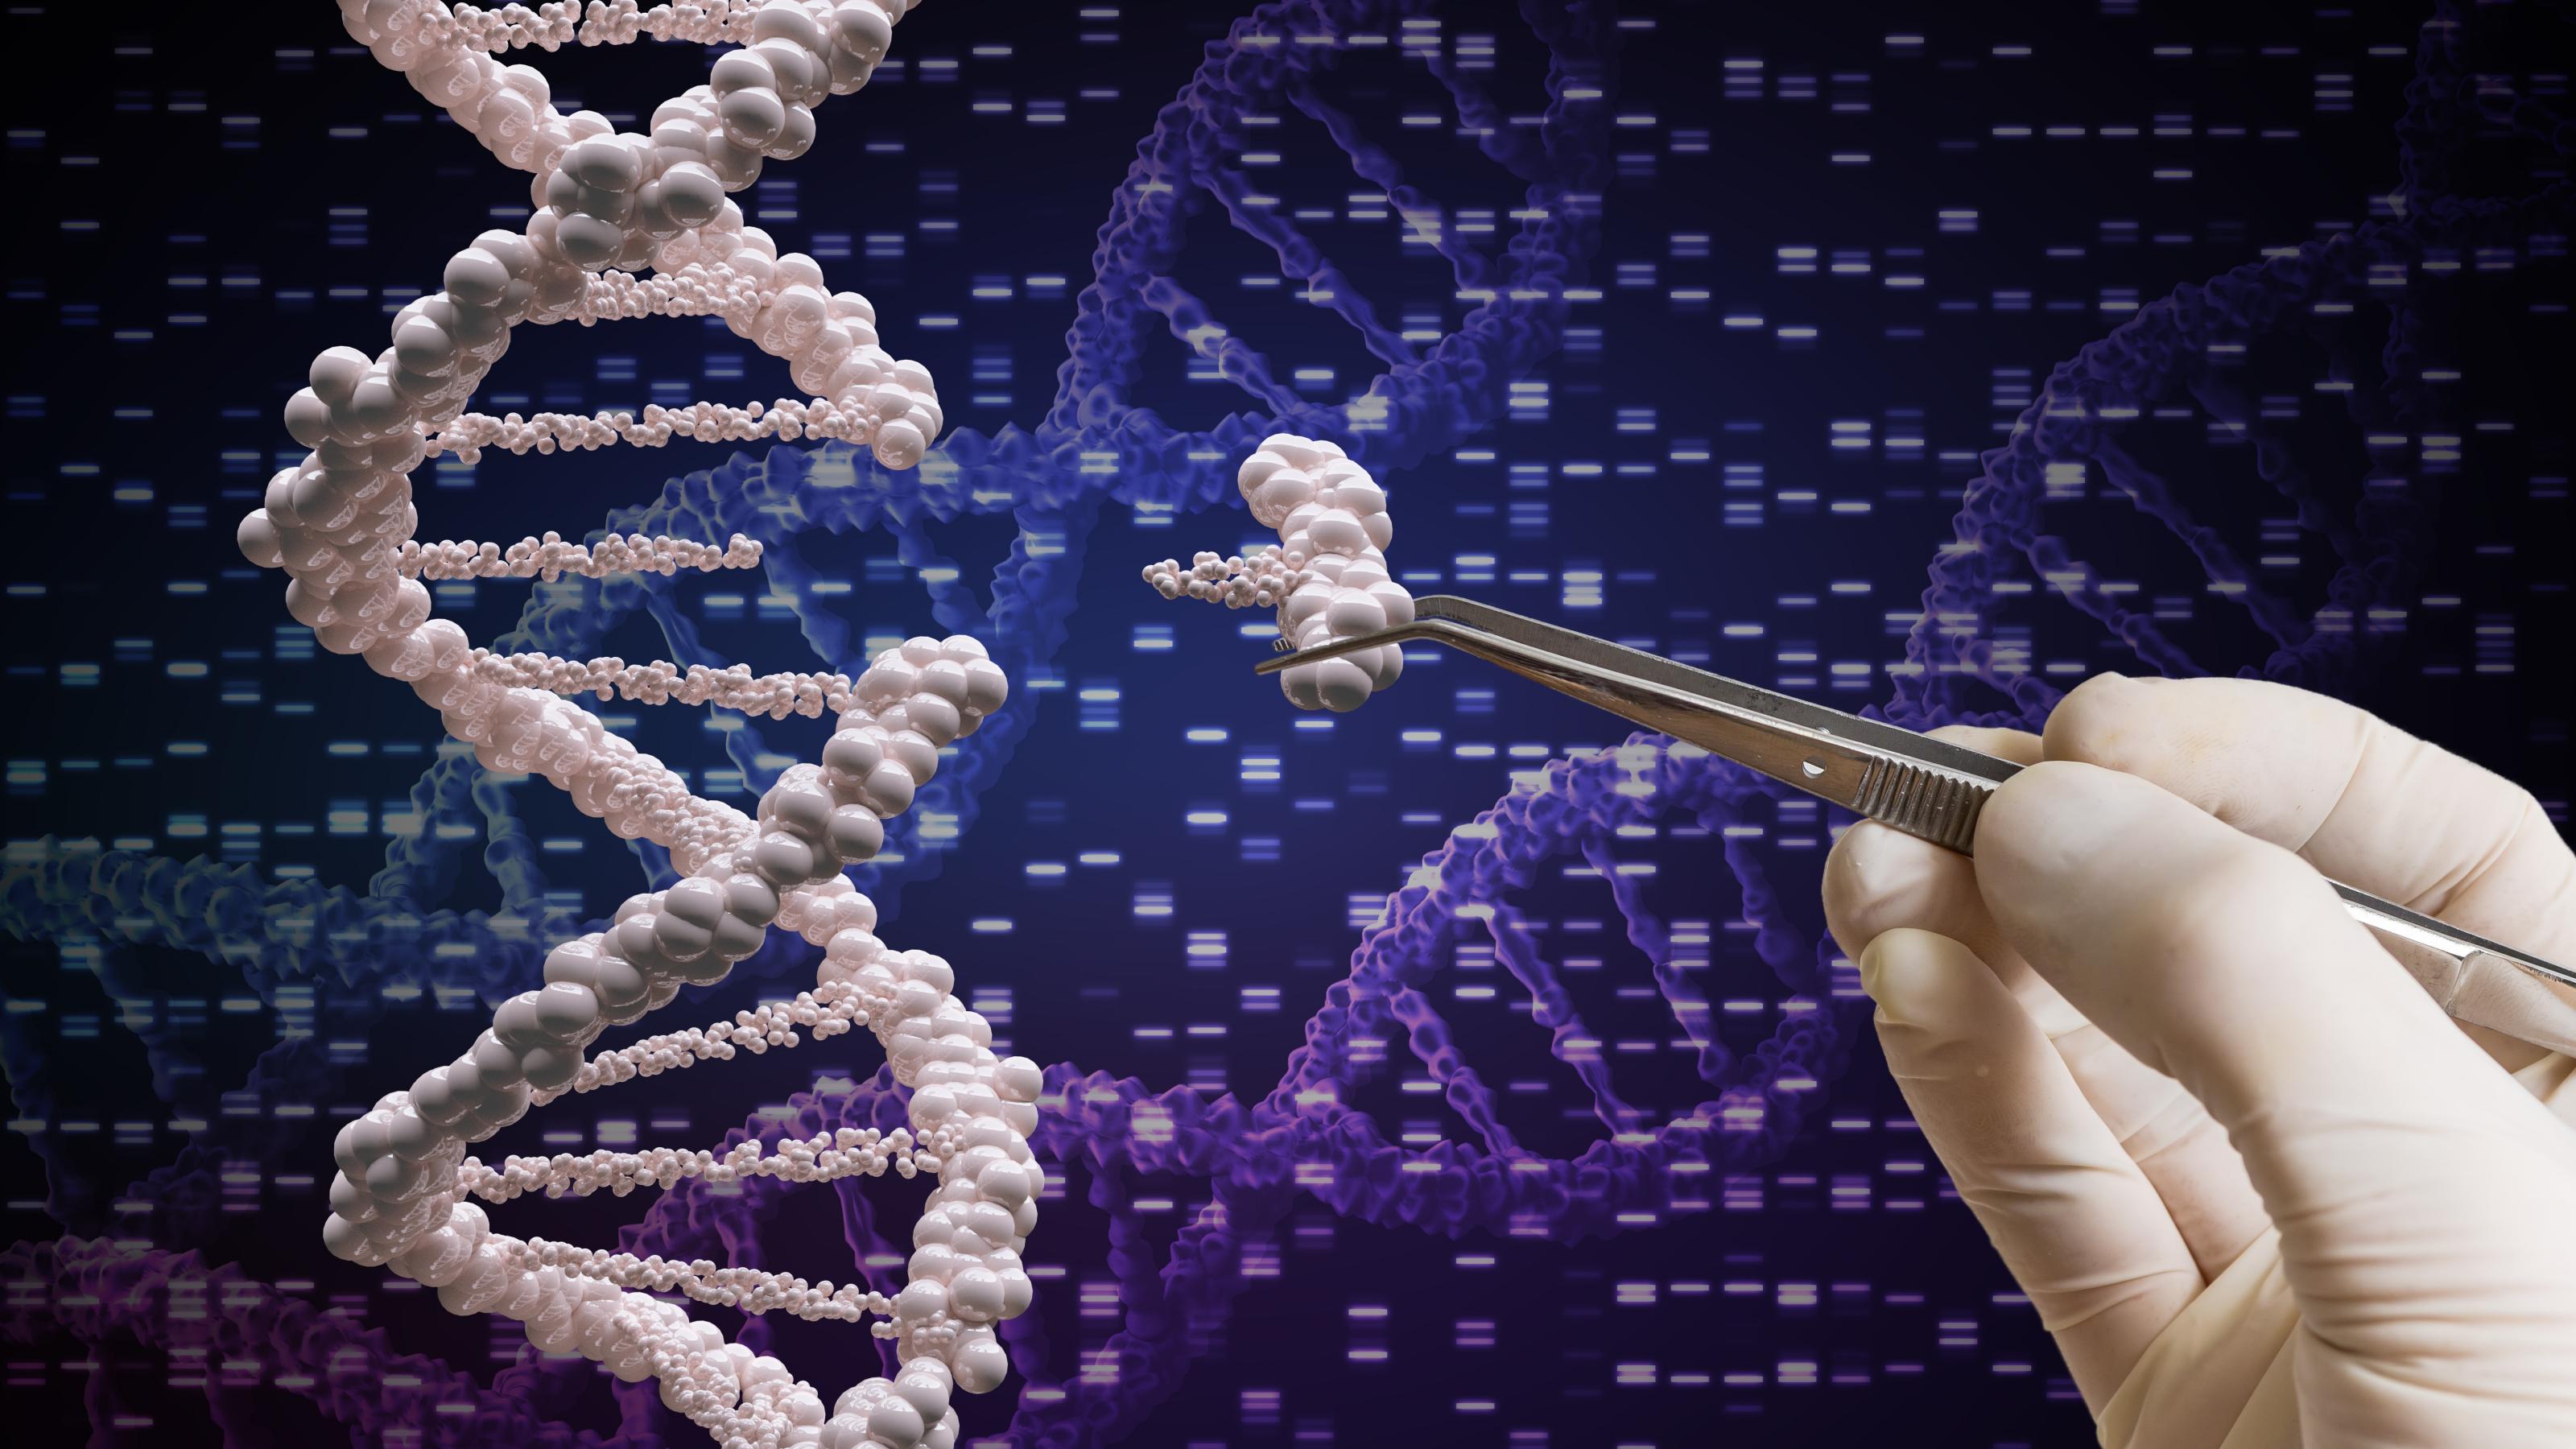 Das Symbolbild macht den Einsatz der  Genschere Crispr/Cas in der Gentechnik verständlich: eine Pinzette entfernt ein Stück der DNA im Erbgut